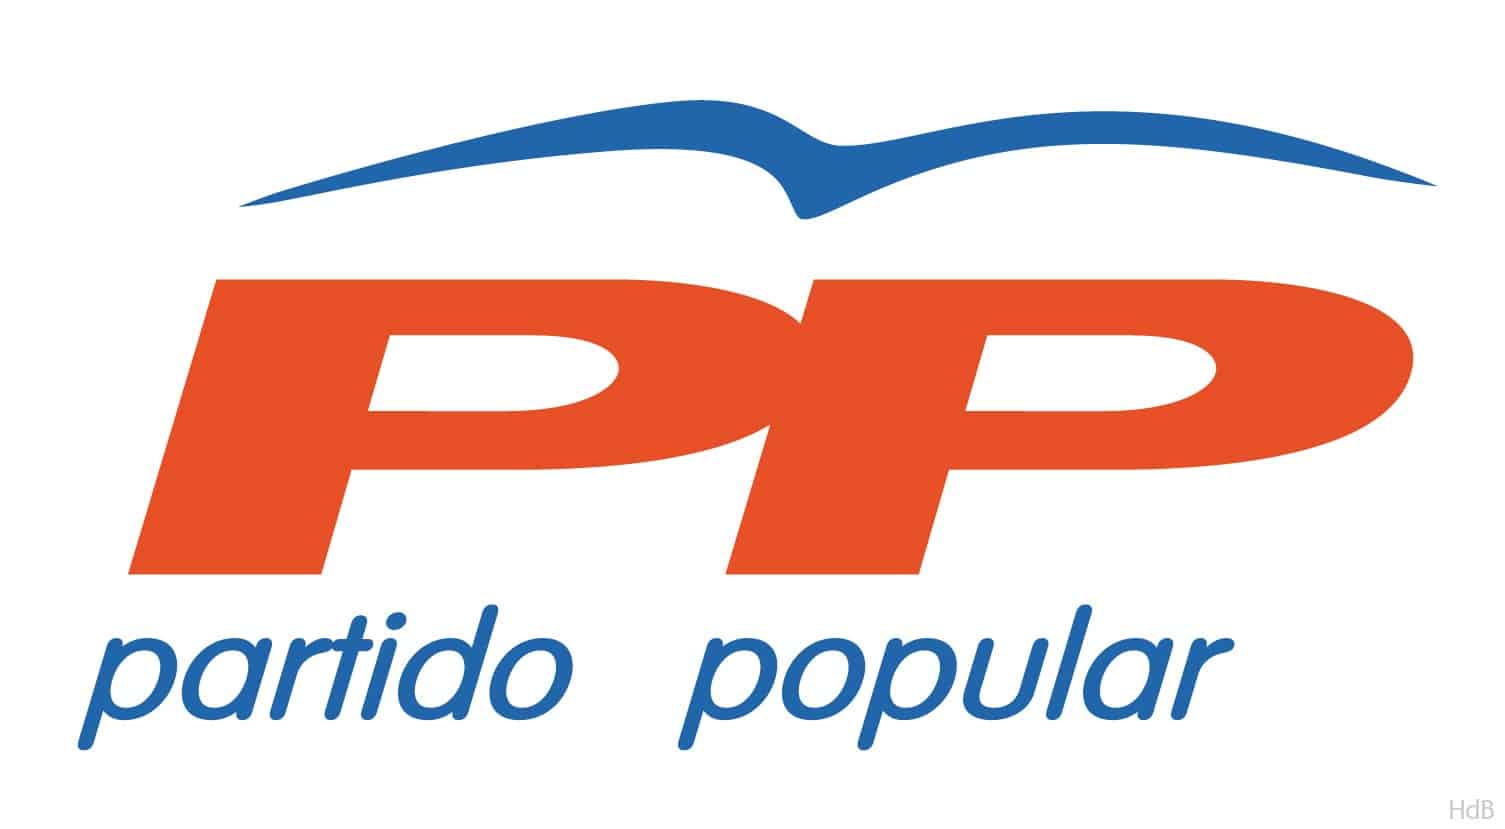 Elecciones Pontevedra 1995 - Juan Luis Pedrosa (PP) gana con mayoría absoluta traas la retirada de Cobián